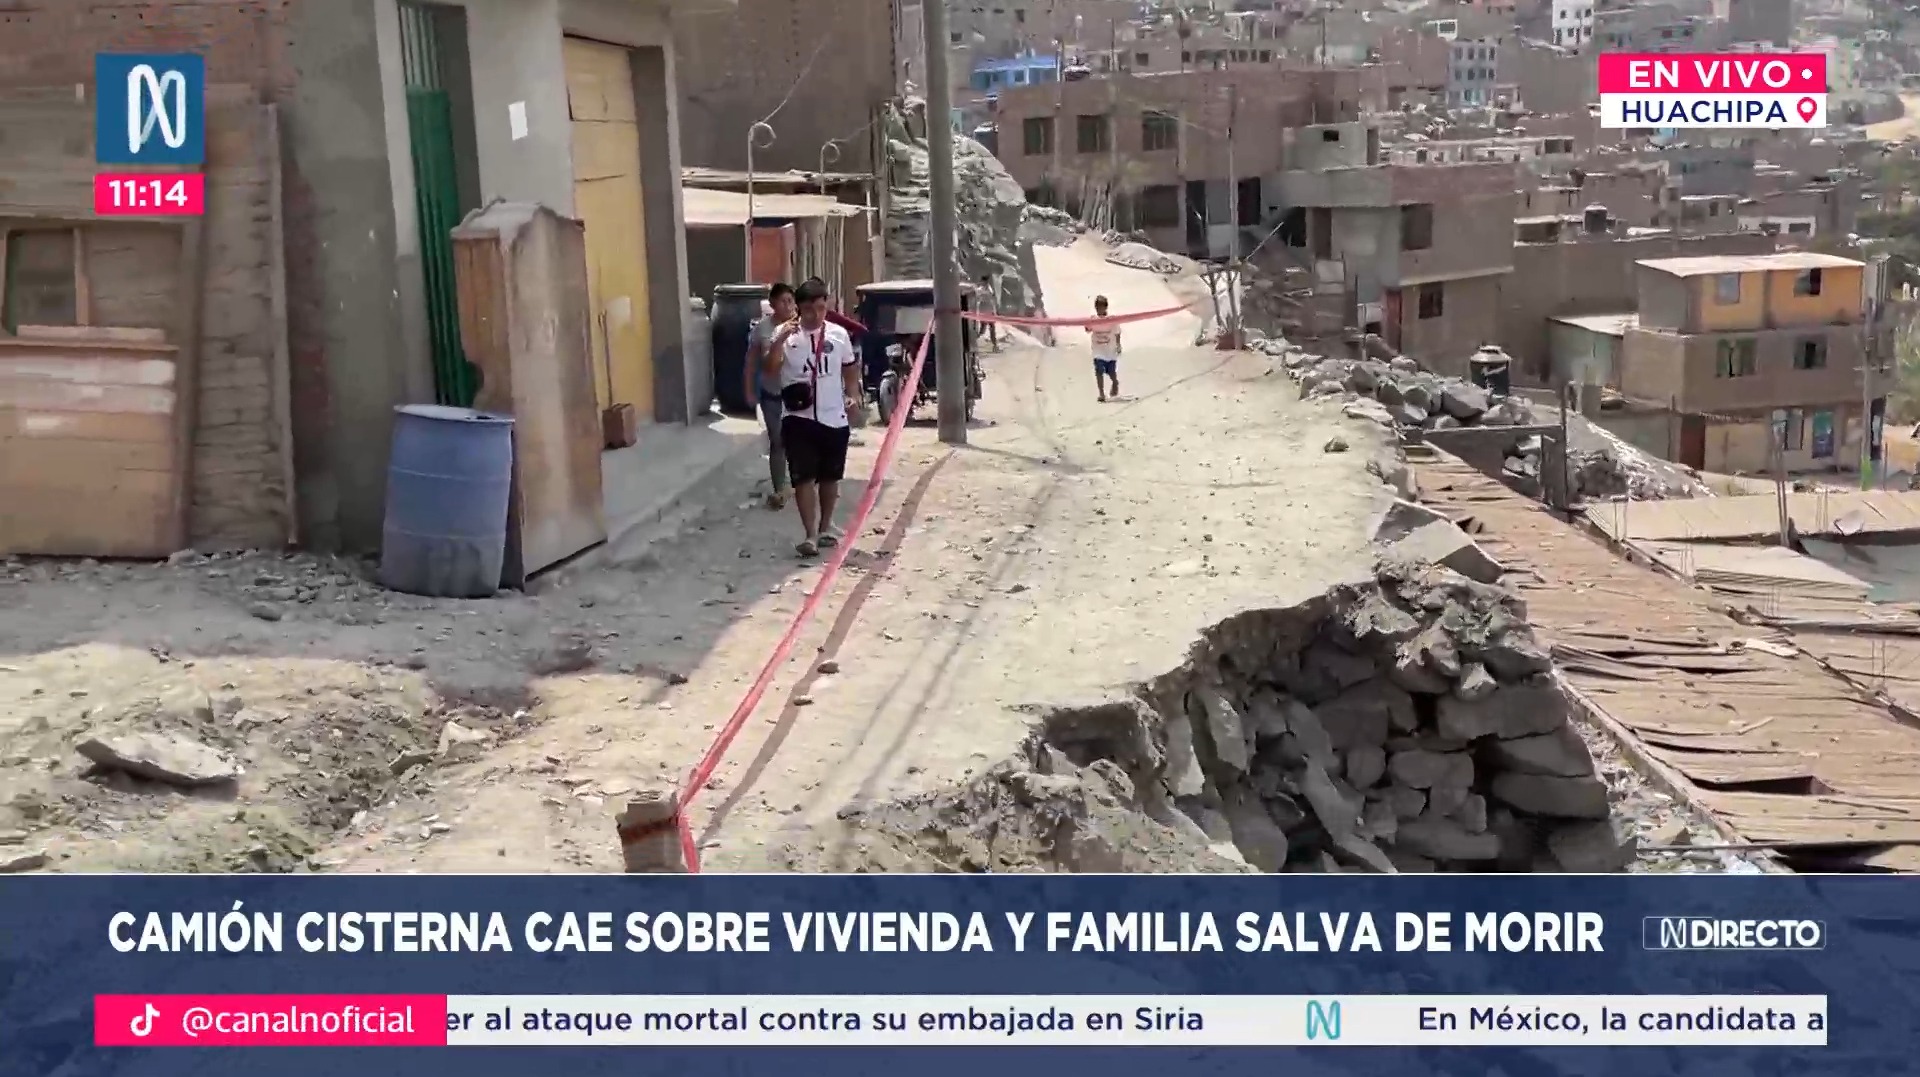 Huachipa: Familia salvó de morir tras caída de camión cisterna sobre su casa